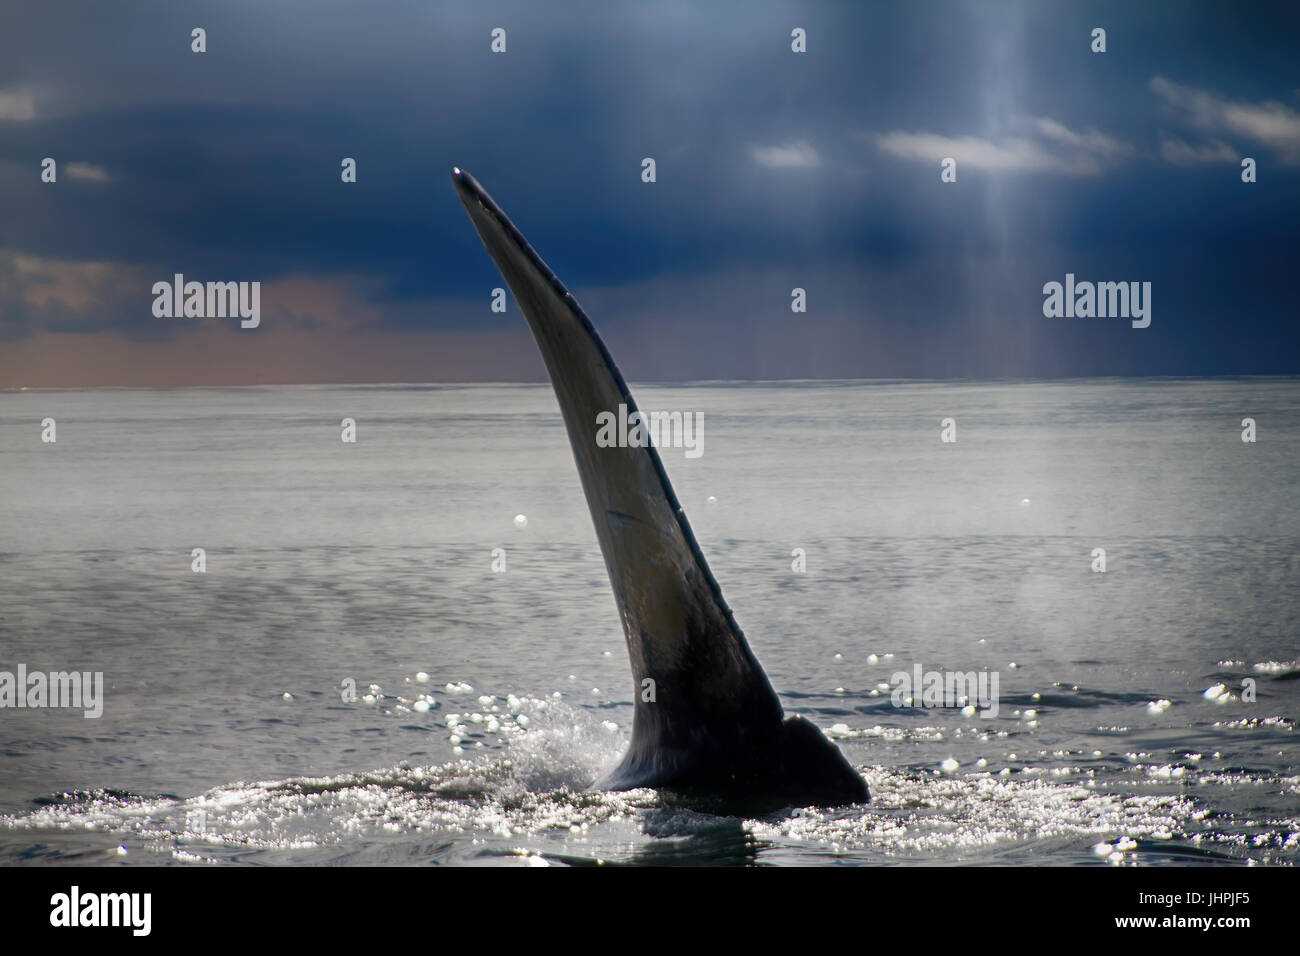 Ehe-Kommunikation. Hump-backed Wal (Impressionen Novaeangliae) schlägt Wasser mit großen Flosse. Impressionen bedeutet riesige Flügel. Ruhe und Himmel am Vorabend des Typhoo Stockfoto